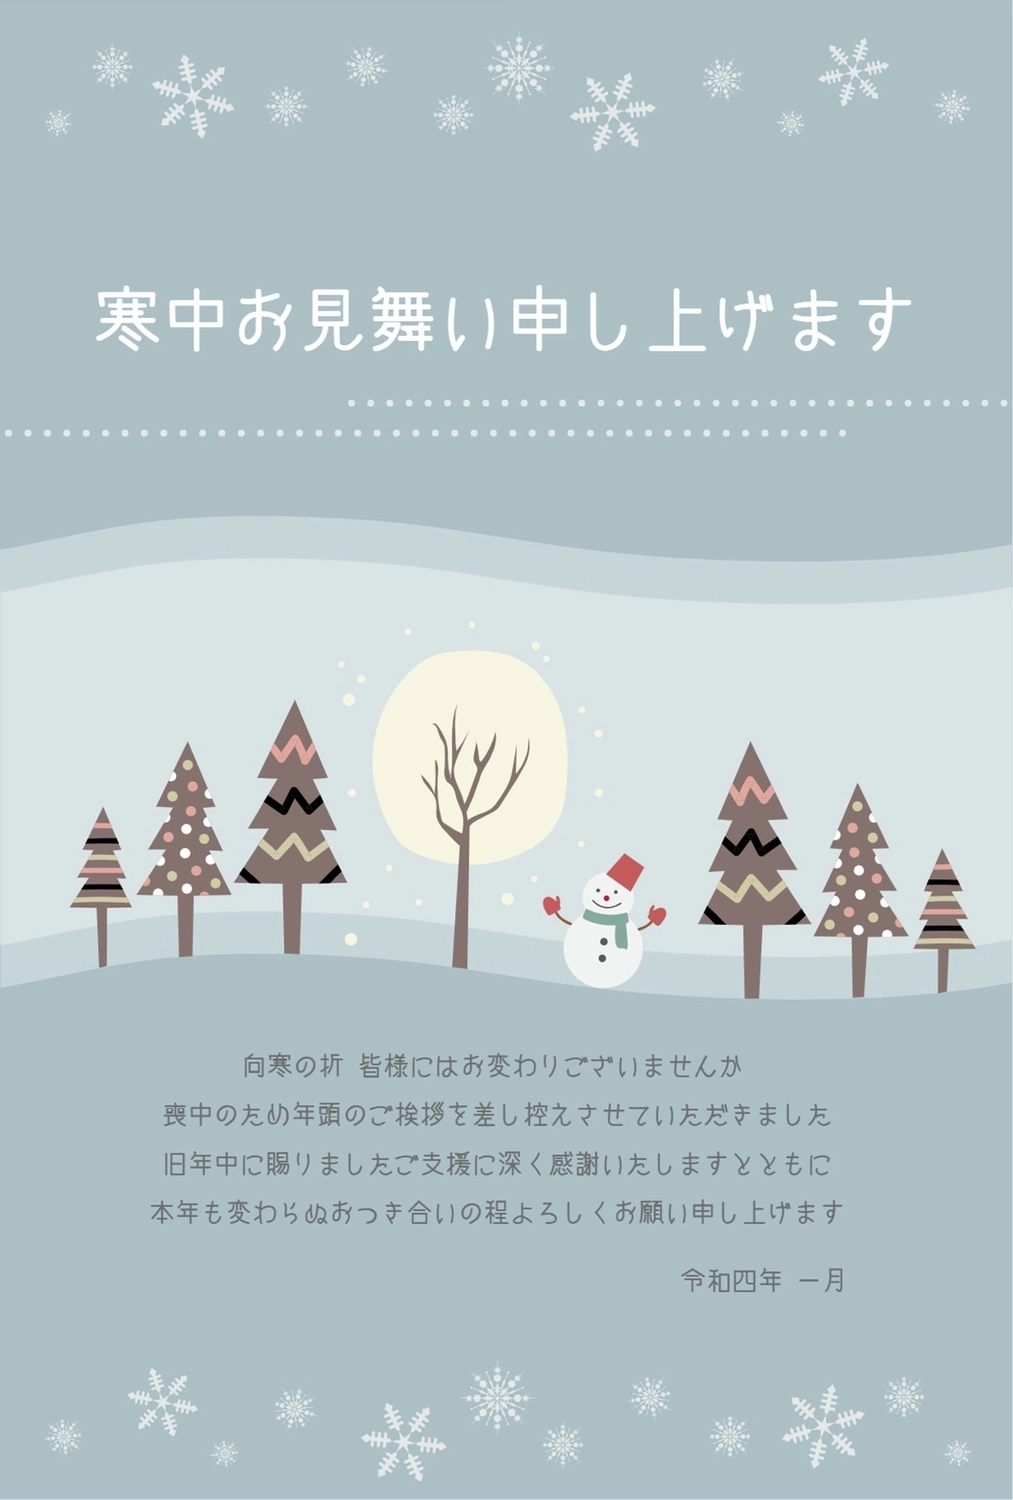 雪だるまと木立の寒中見舞い, gray, horizontal writing, vertical, Mid-winter Greeting template